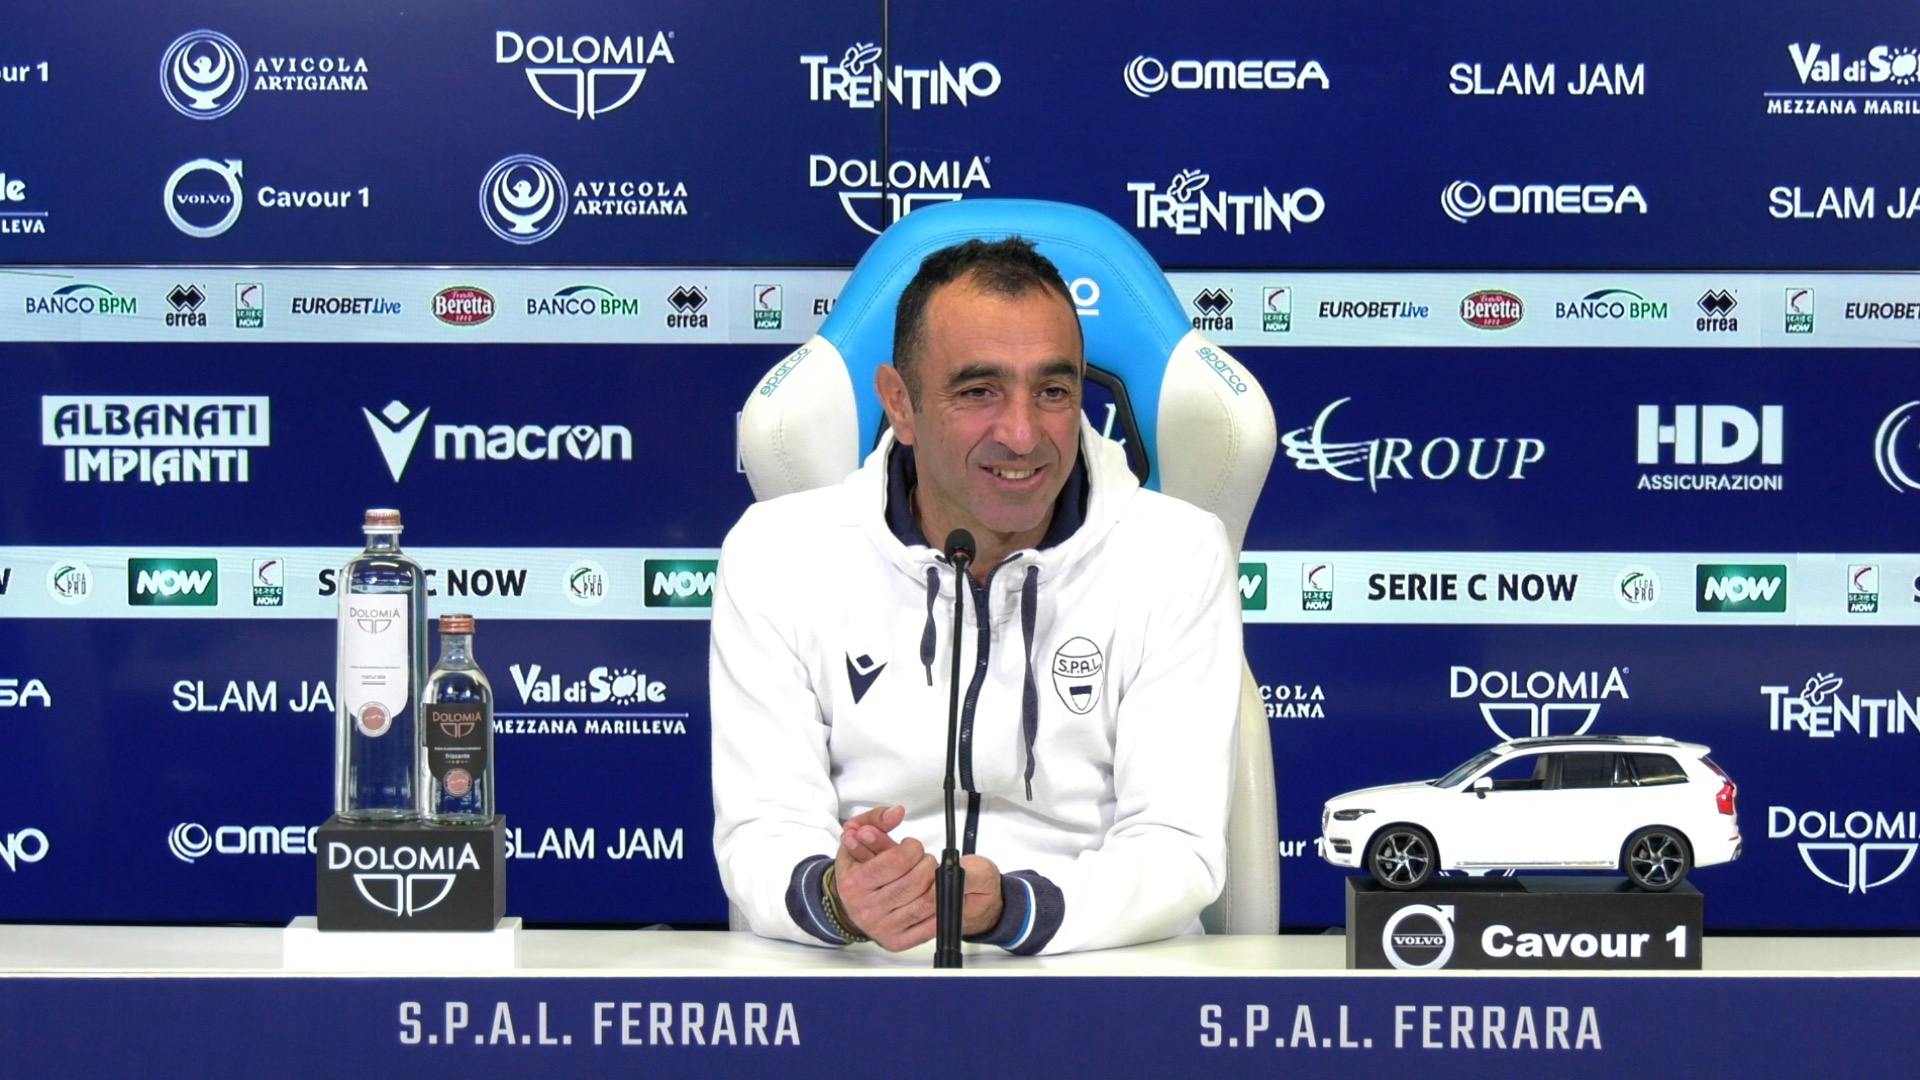 SPAL - Juventus Next Gen, coach Colucci's pre-match conference